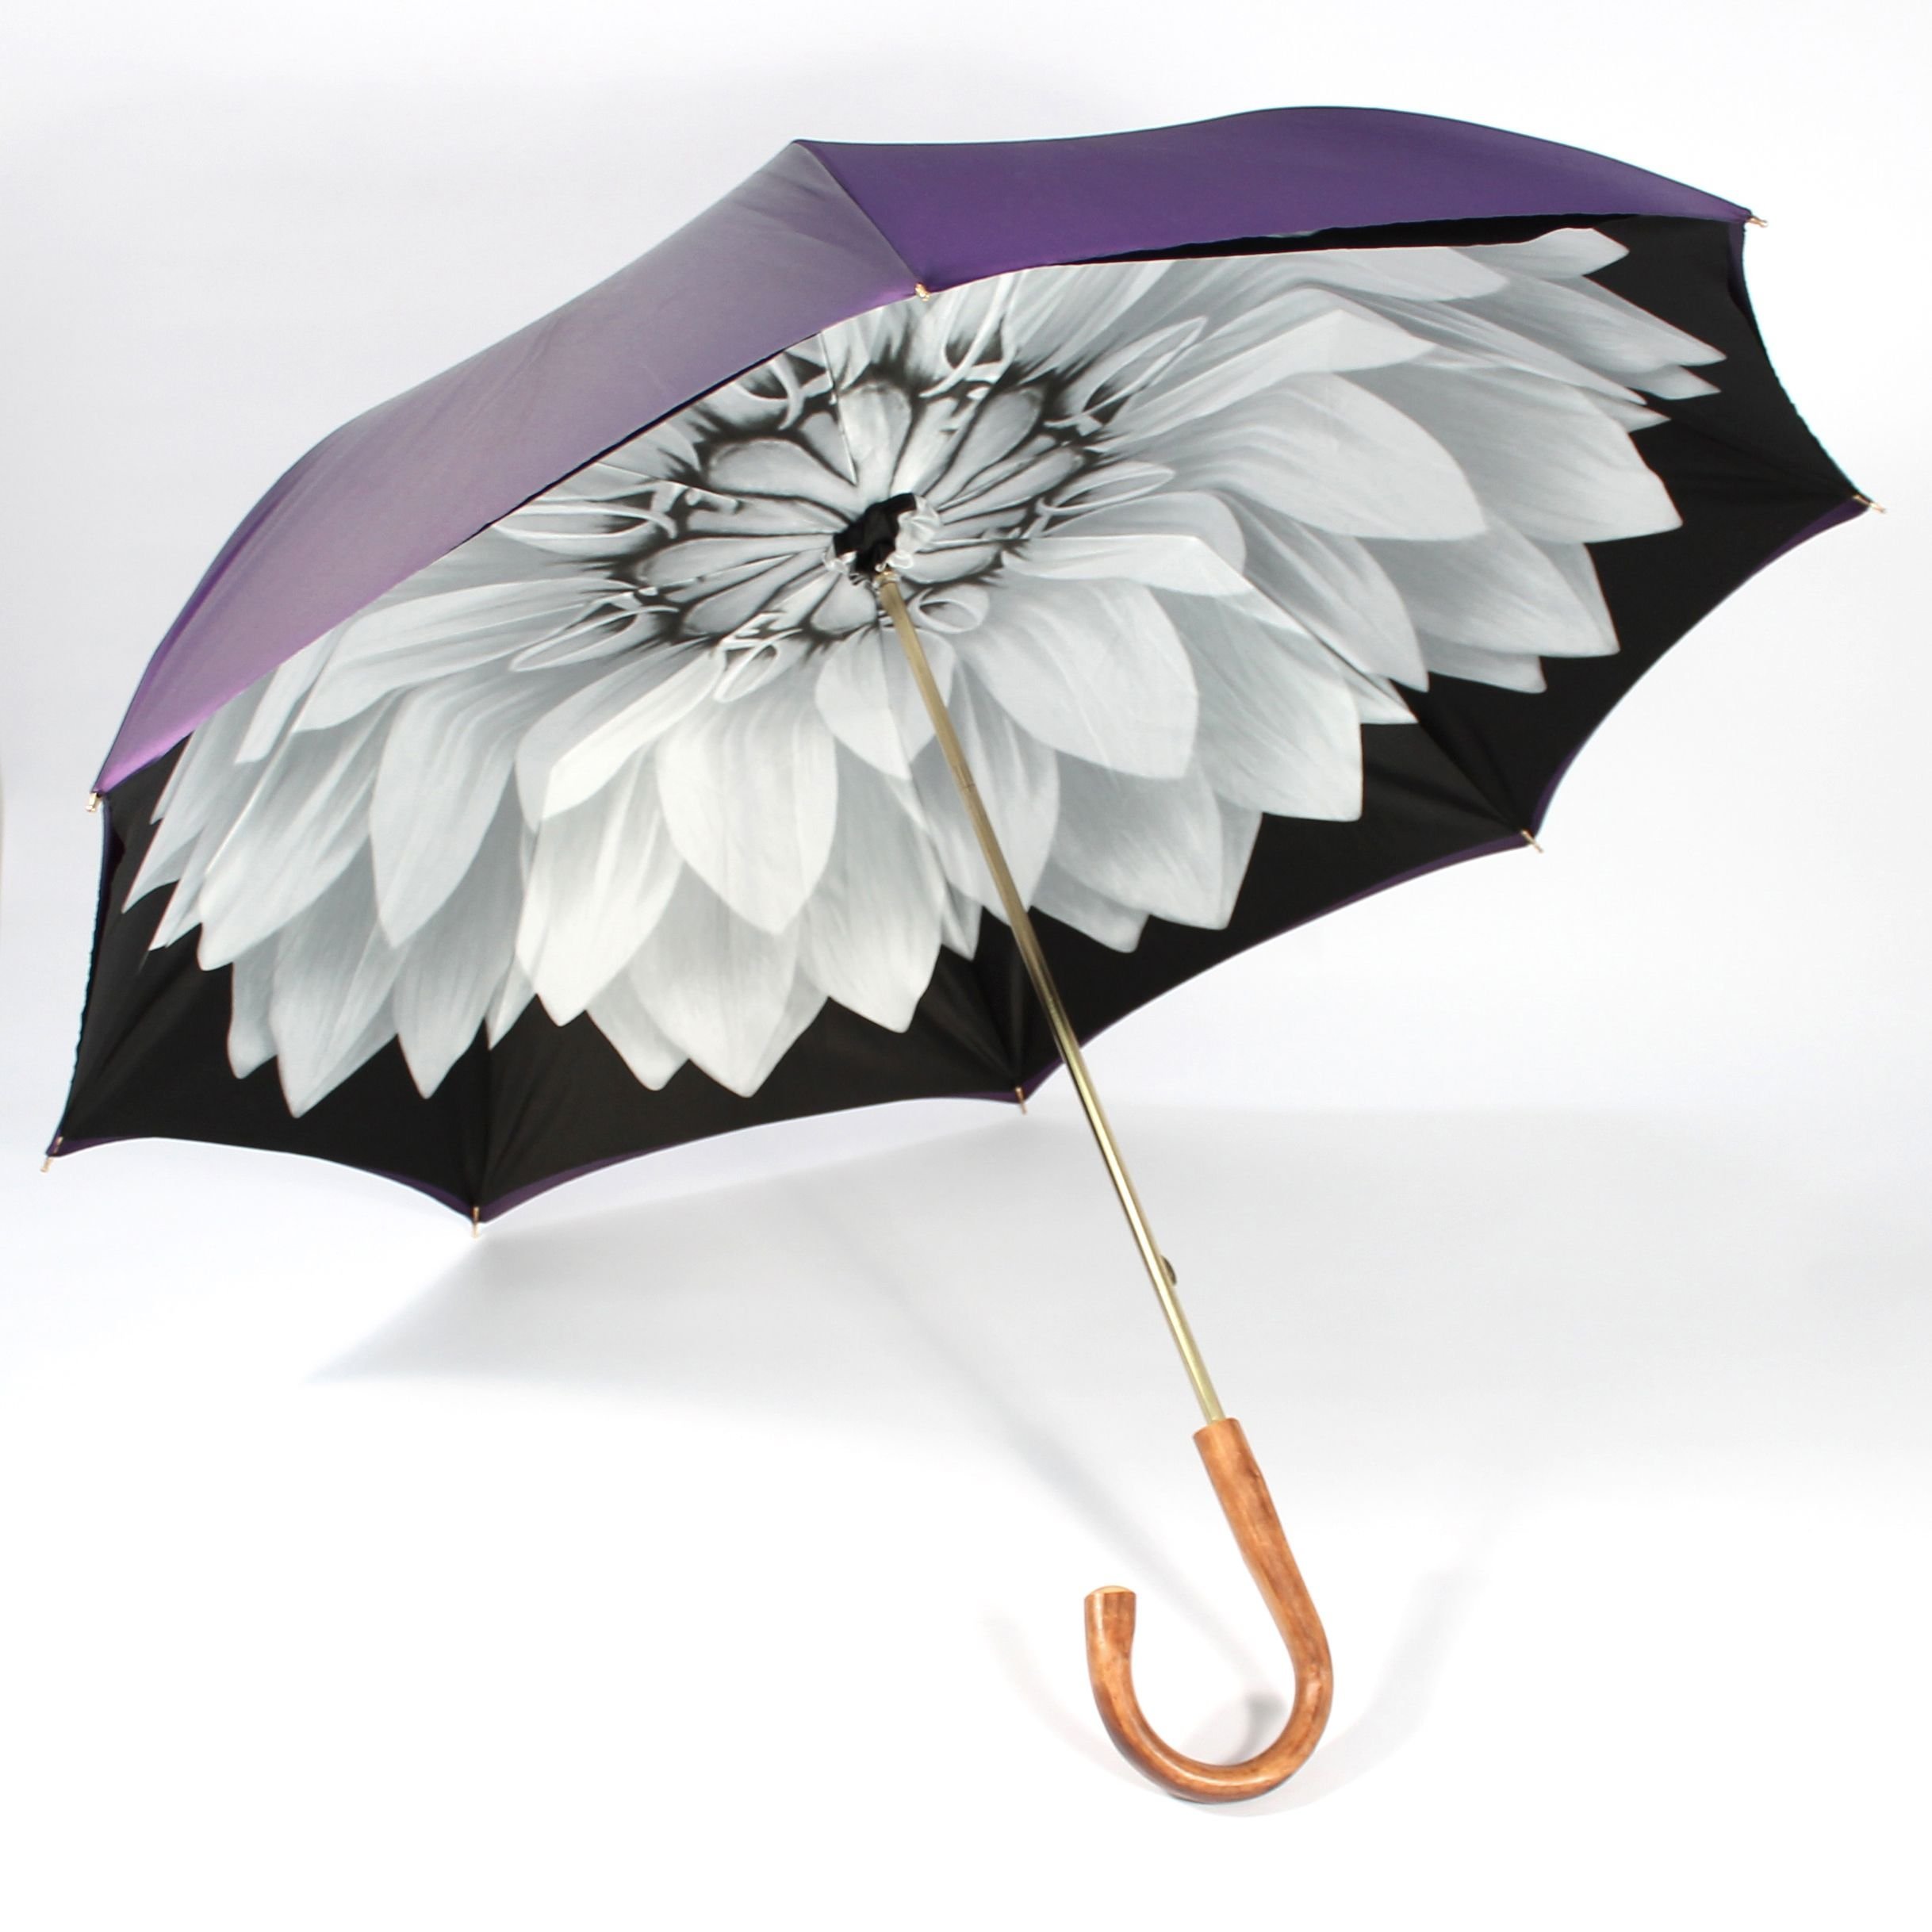 Зонтик початок. Зонтик Амбрелла. Оригинальные зонтики. Необычные зонты. Стильный зонт.